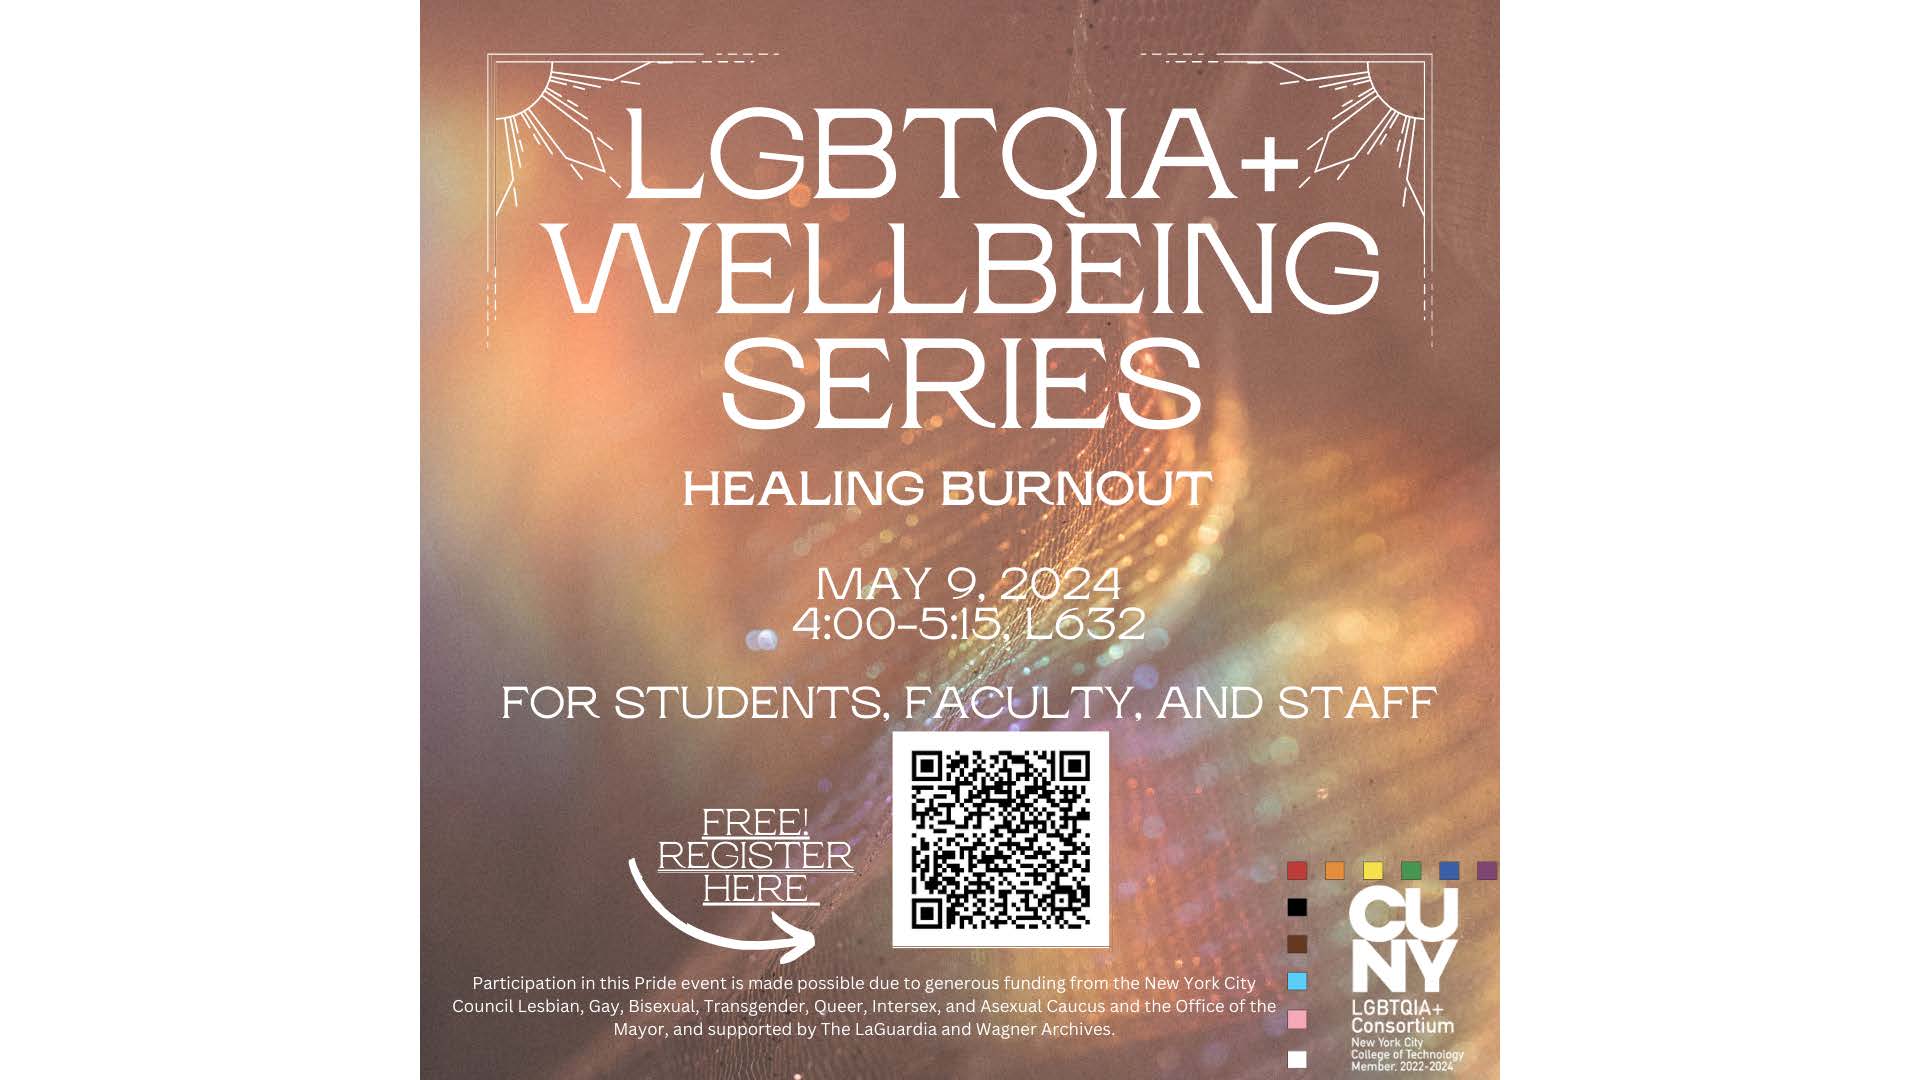 LGBTQIA Wellbeing